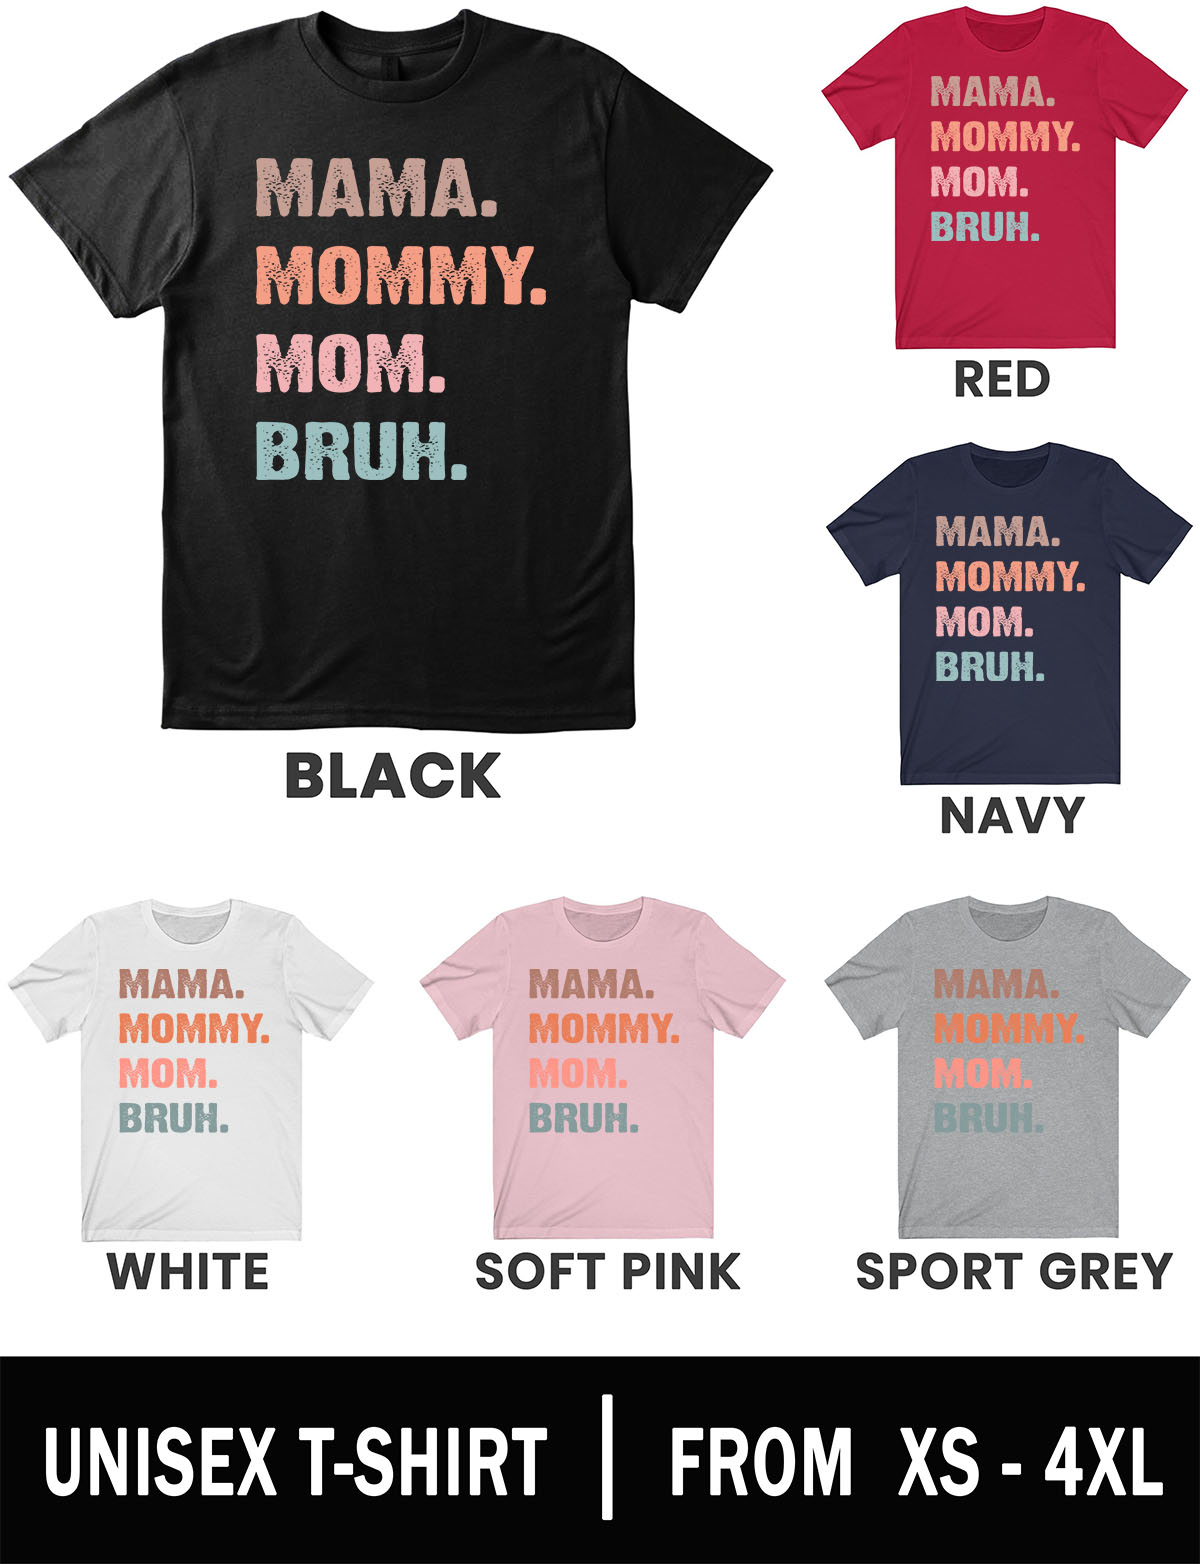 mom tshirt gift for mom mama mom shirt cute mom shirt bruh shirt mother gift funny mom shirt mommy shirt shirt for mom